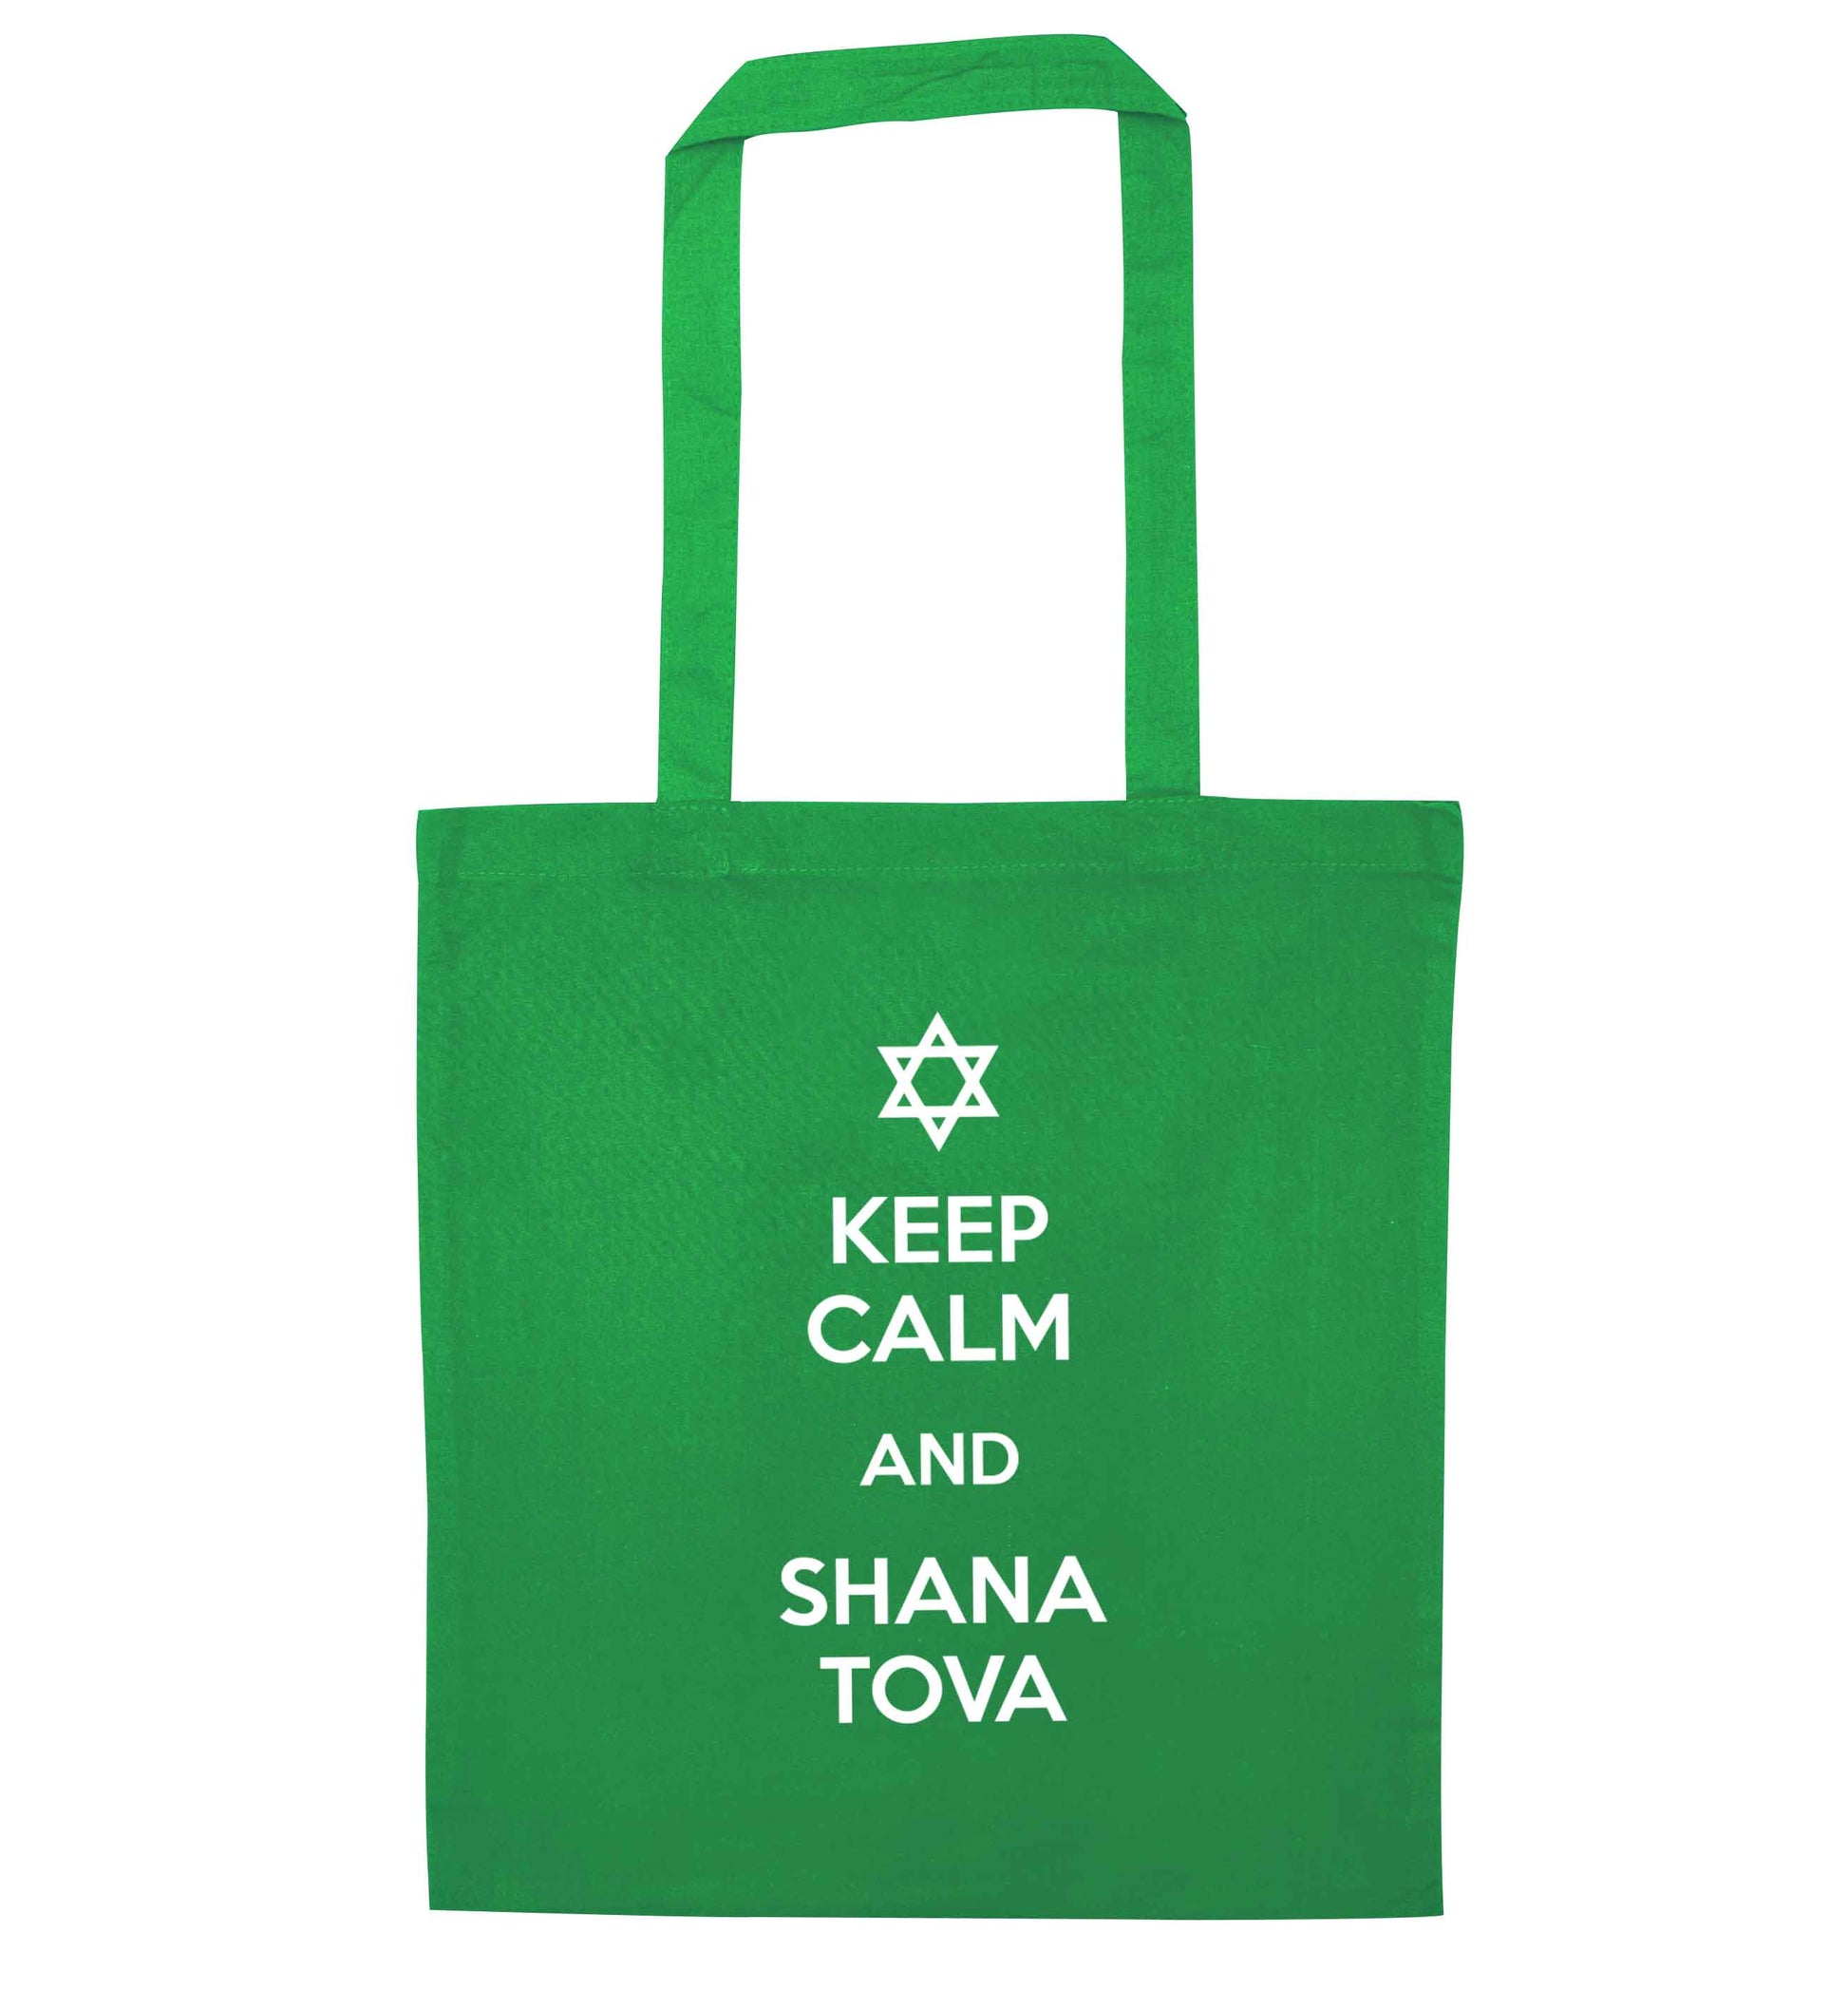 Keep calm and shana tova green tote bag